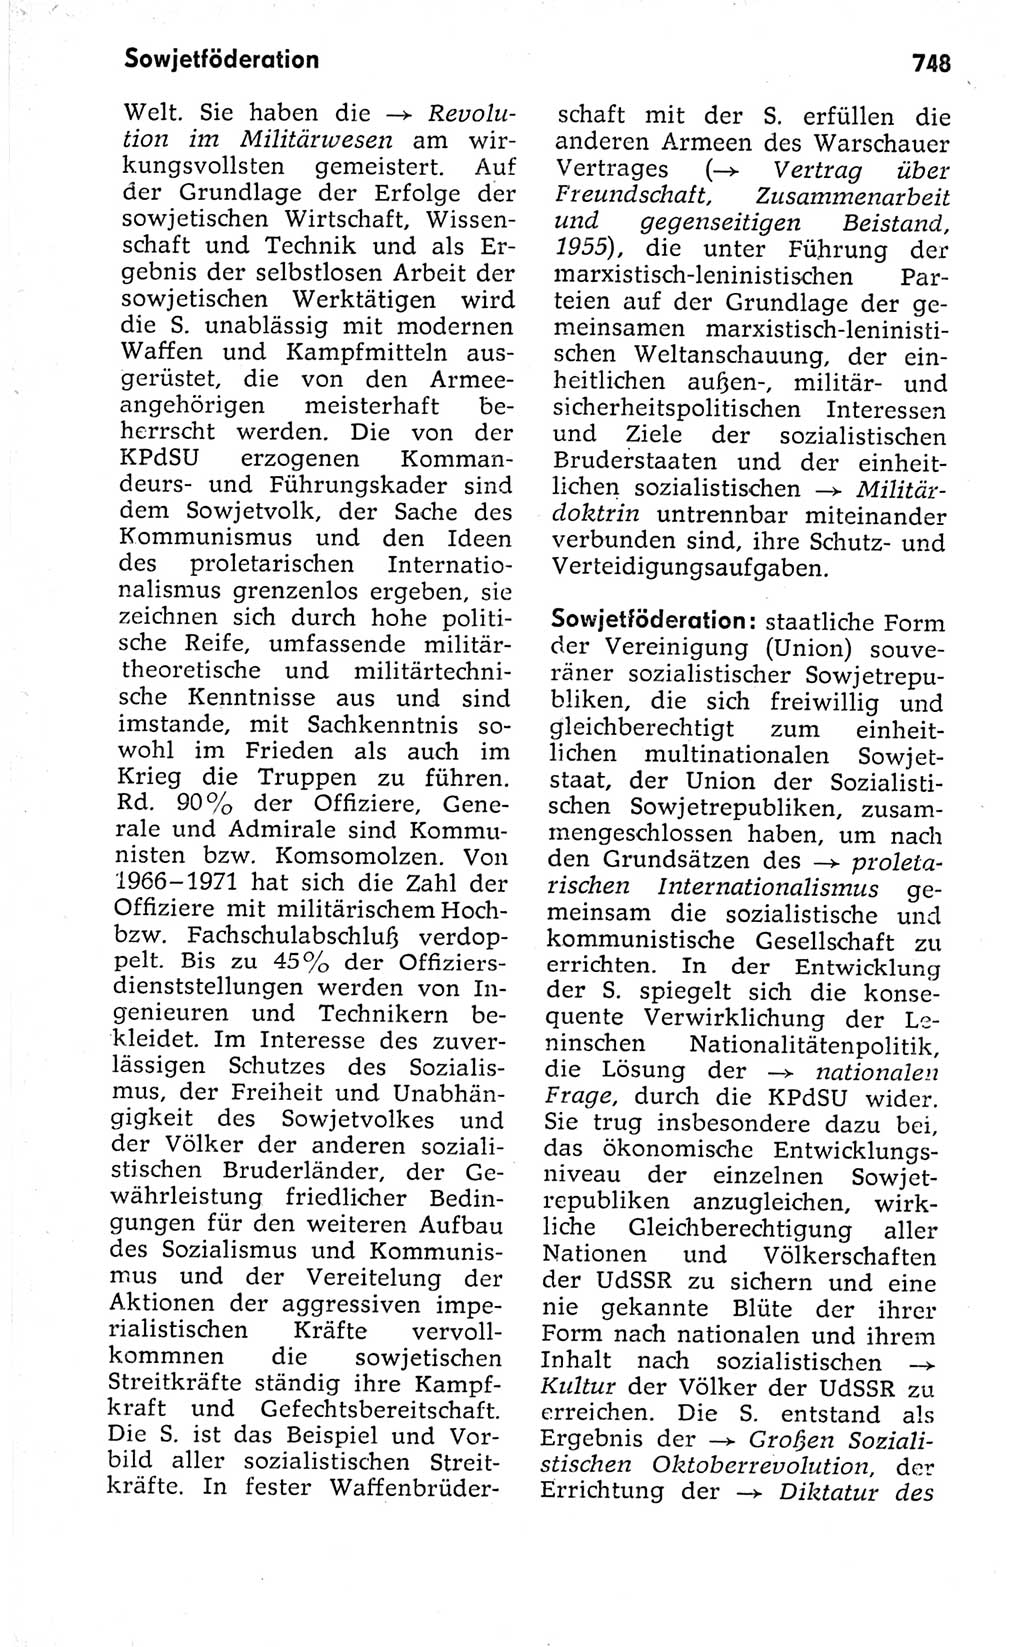 Kleines politisches Wörterbuch [Deutsche Demokratische Republik (DDR)] 1973, Seite 748 (Kl. pol. Wb. DDR 1973, S. 748)